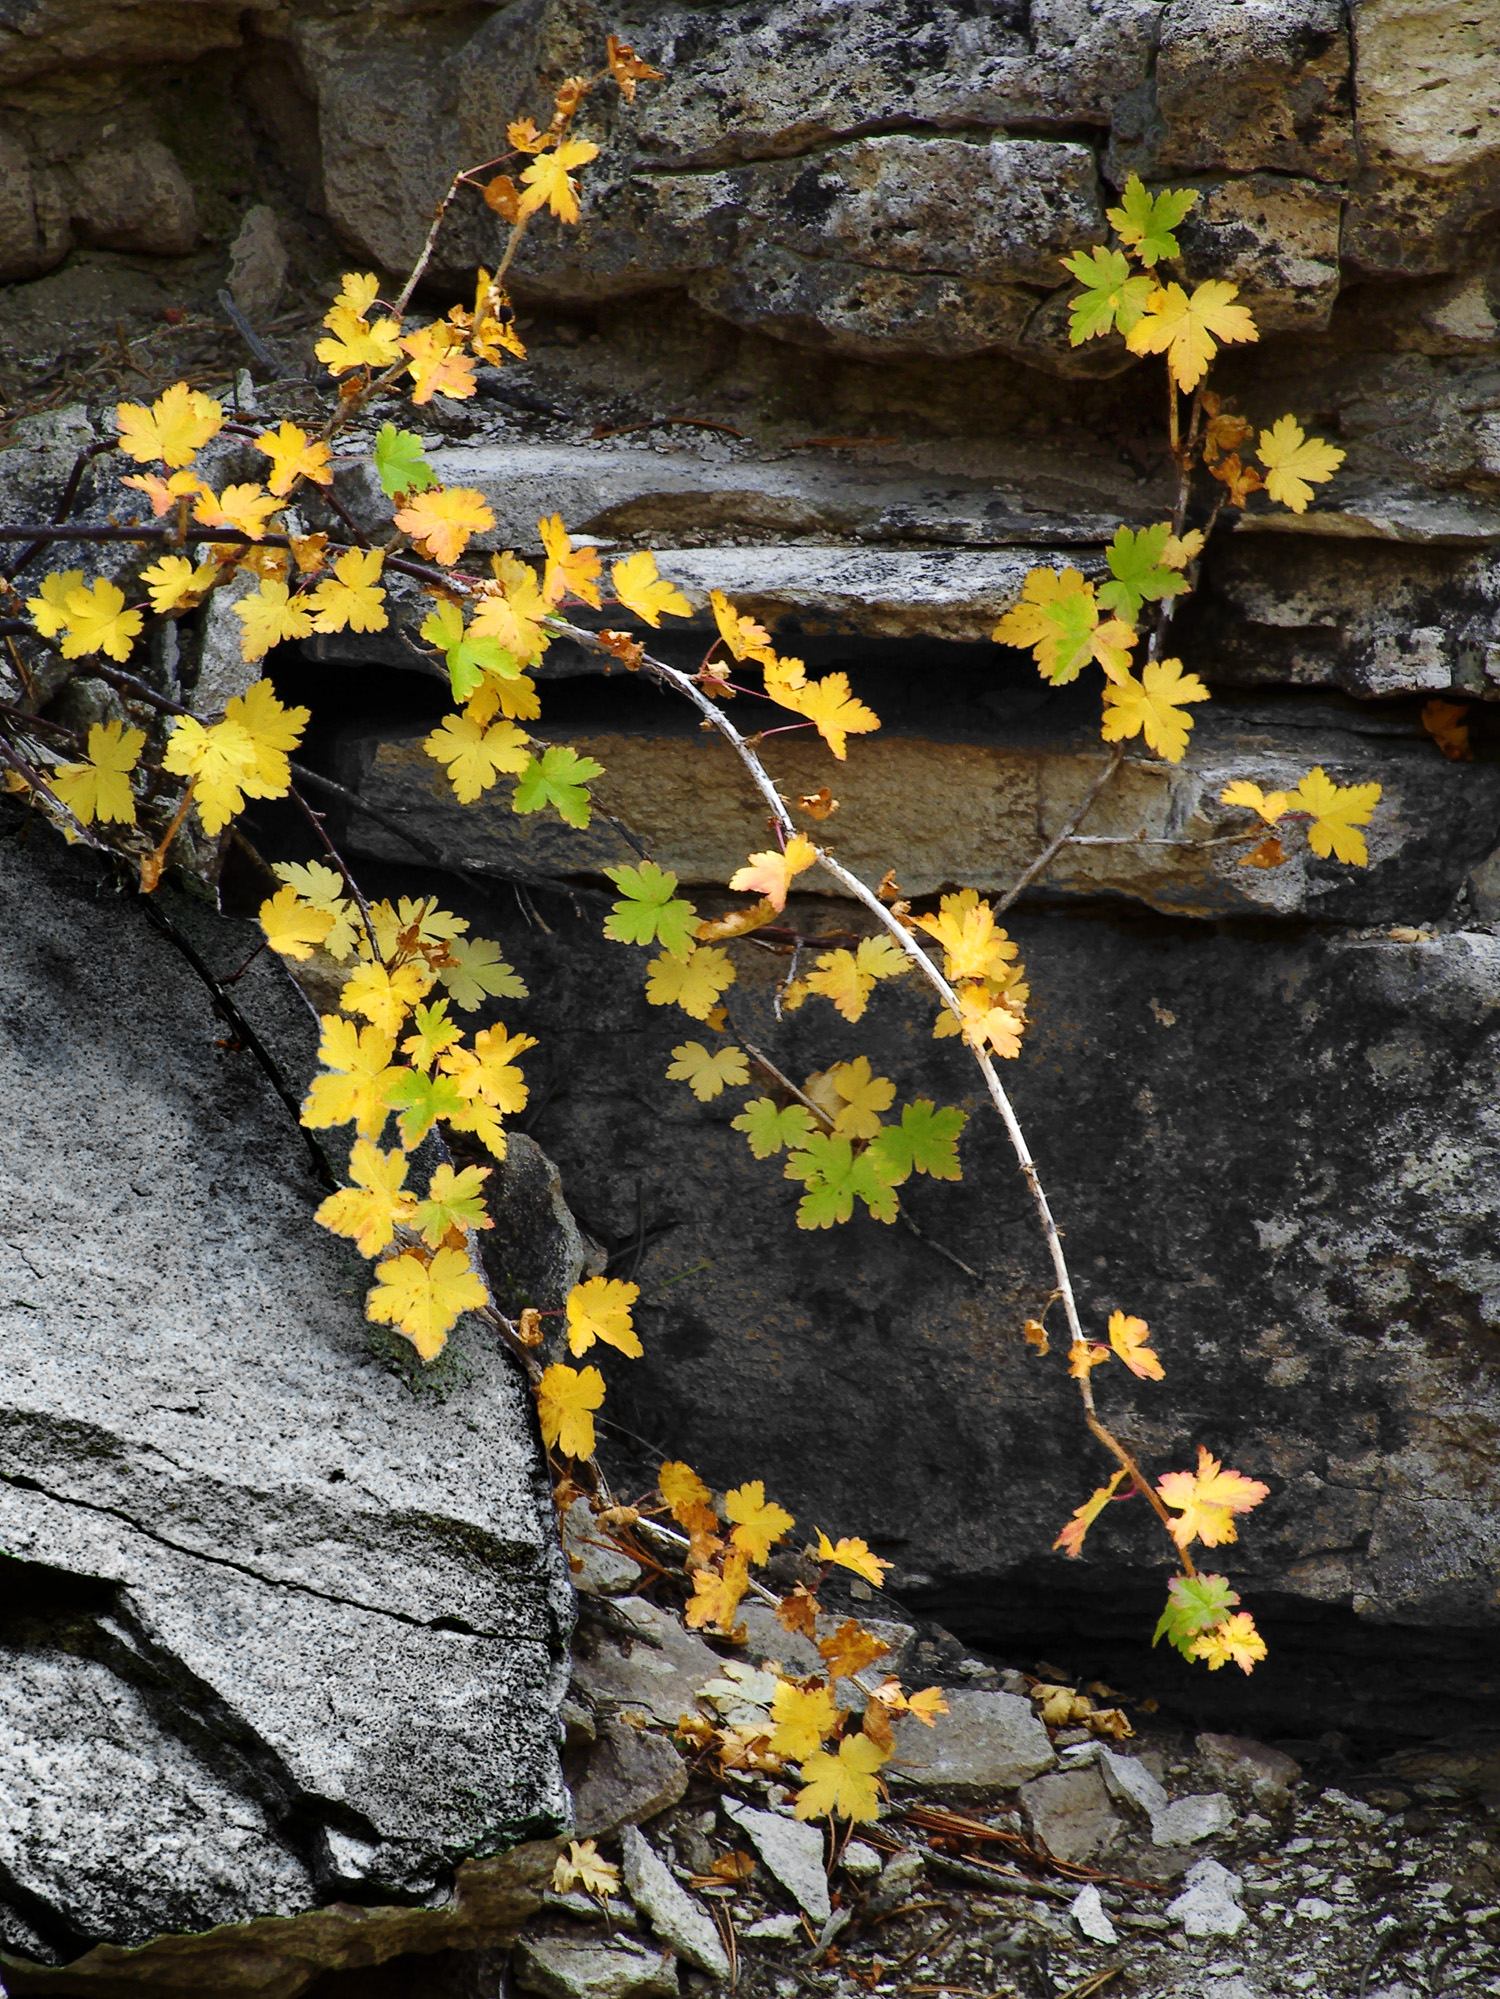 Leaves and Rocks, Sardine Creek